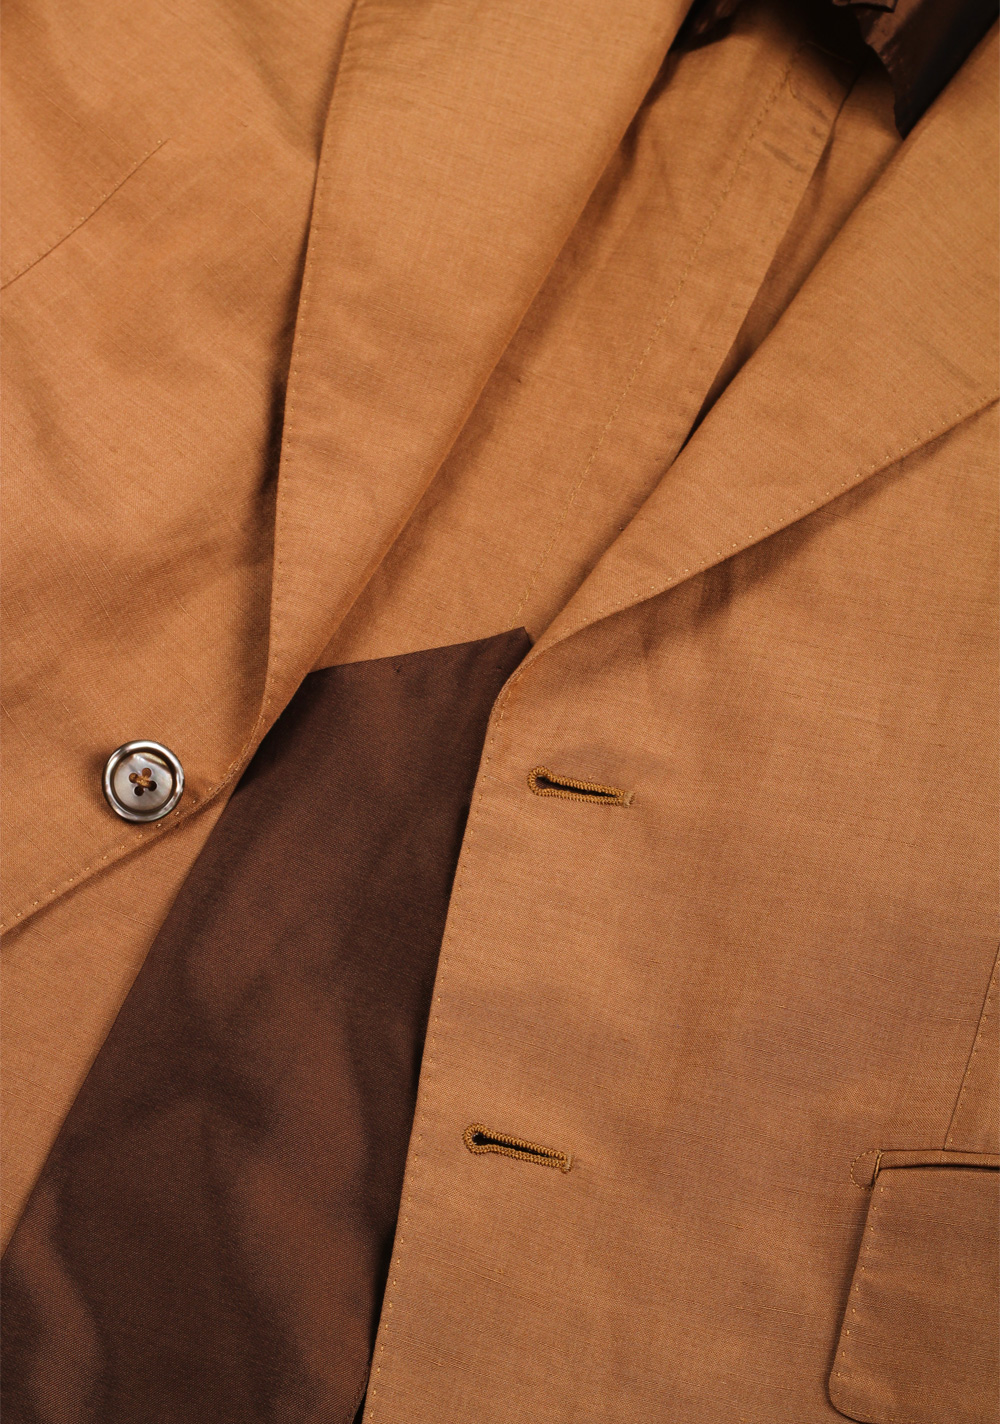 TOM FORD Shelton Brown Suit | Costume Limité